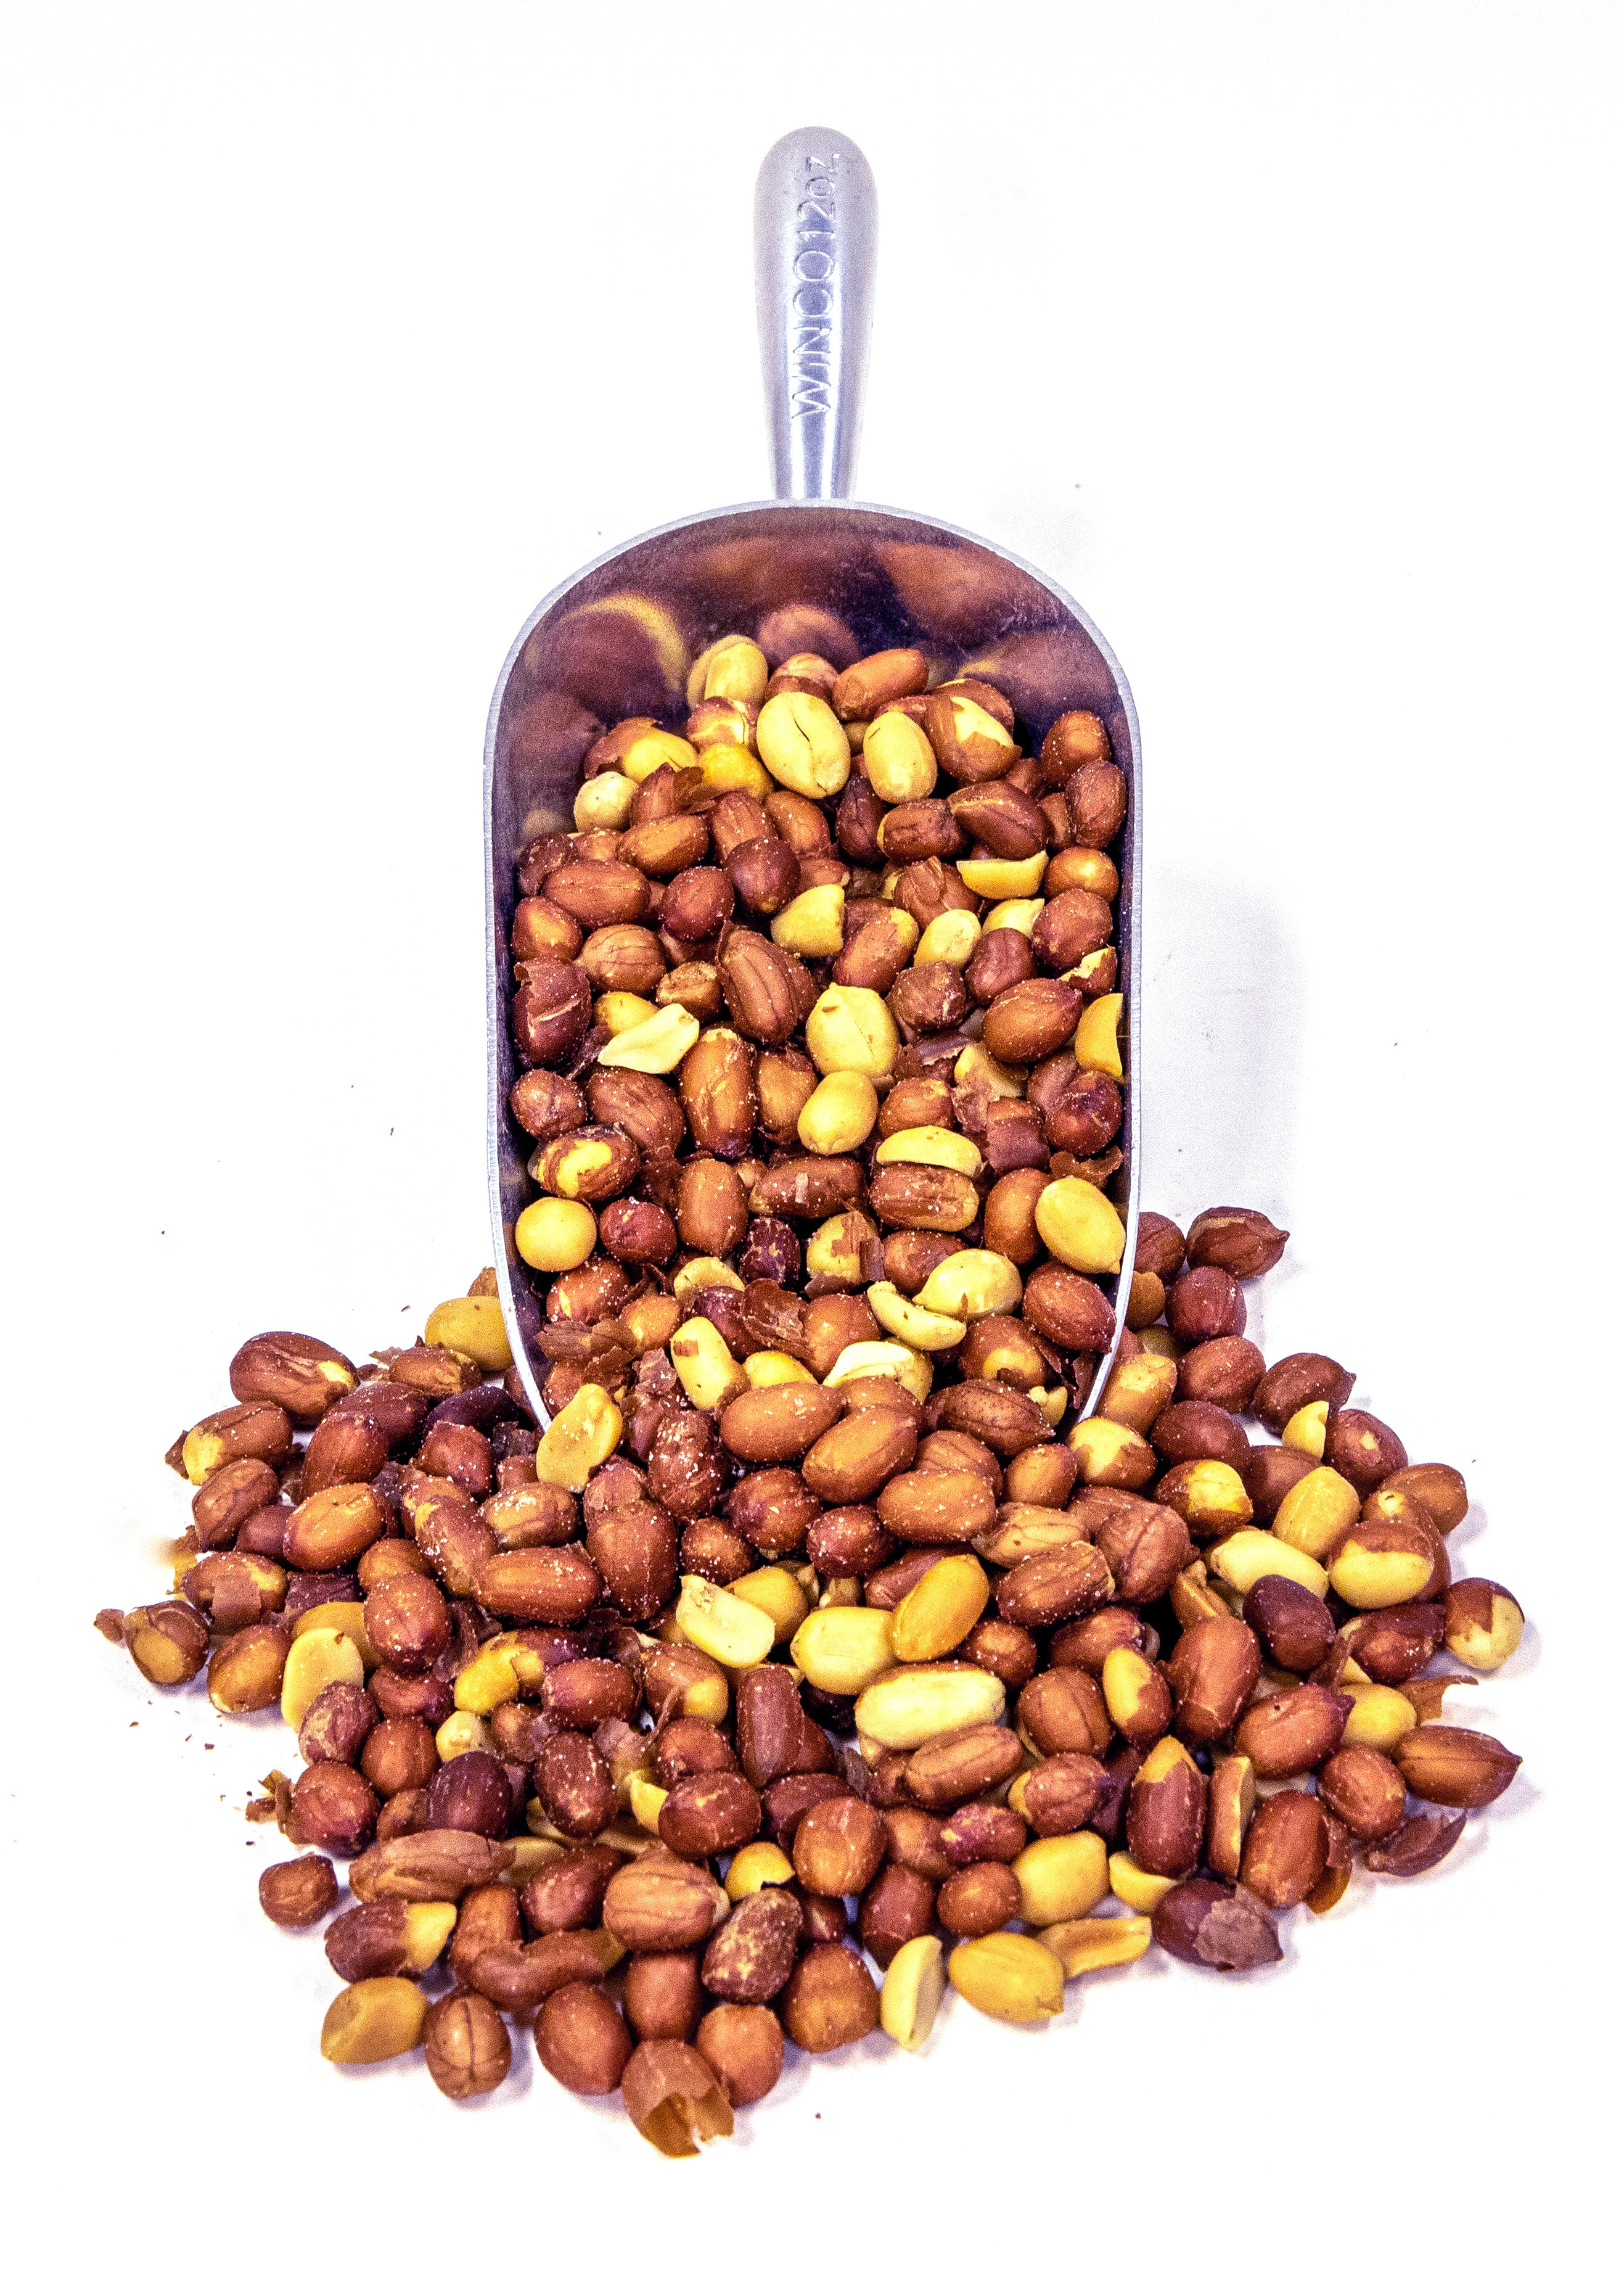 Roasted, No Salt Jumbo Virginia Redskin Peanuts